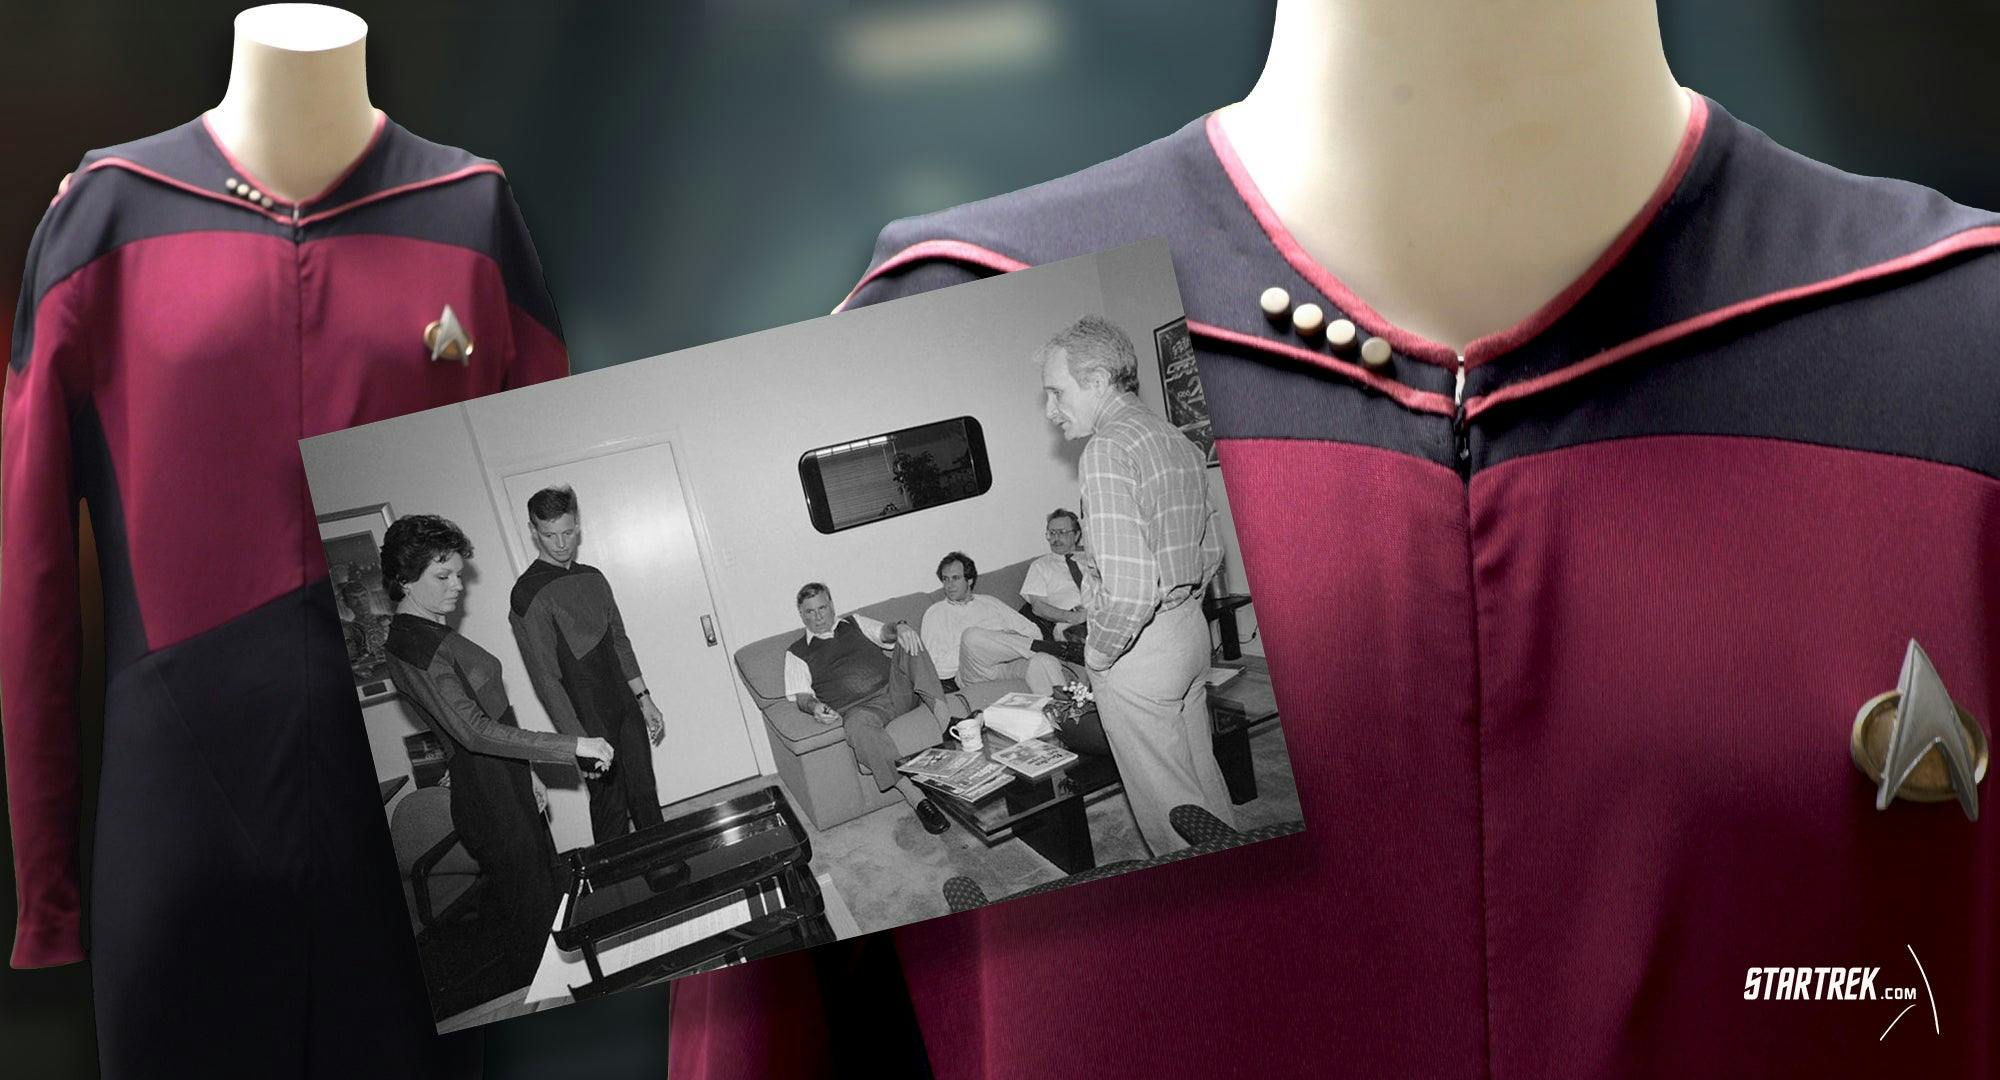 Picard's Uniform